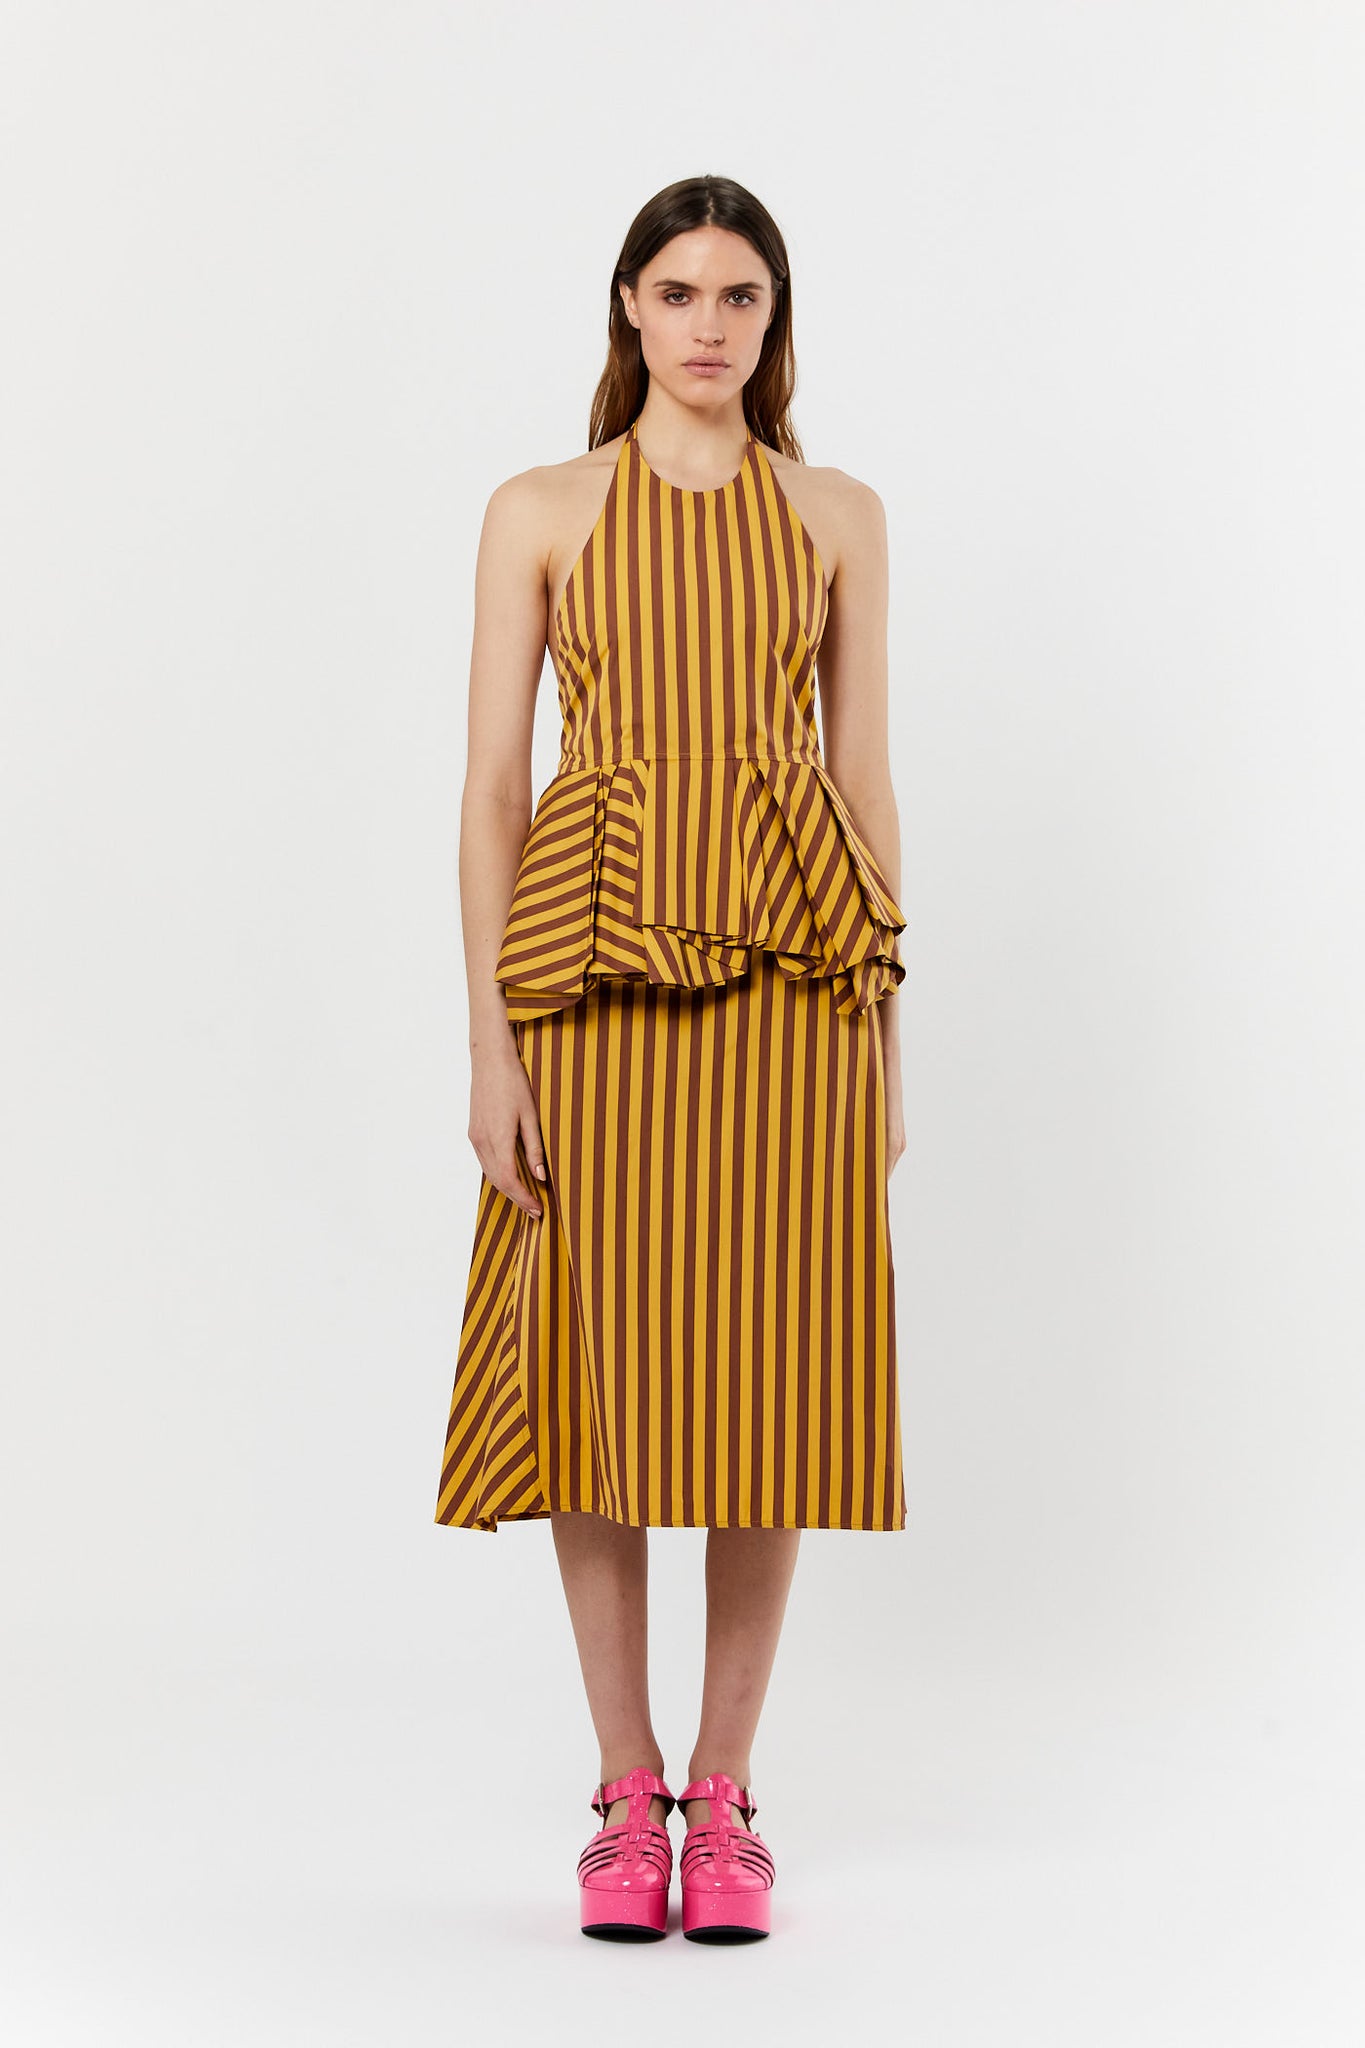 Yellow Stripe Skirt